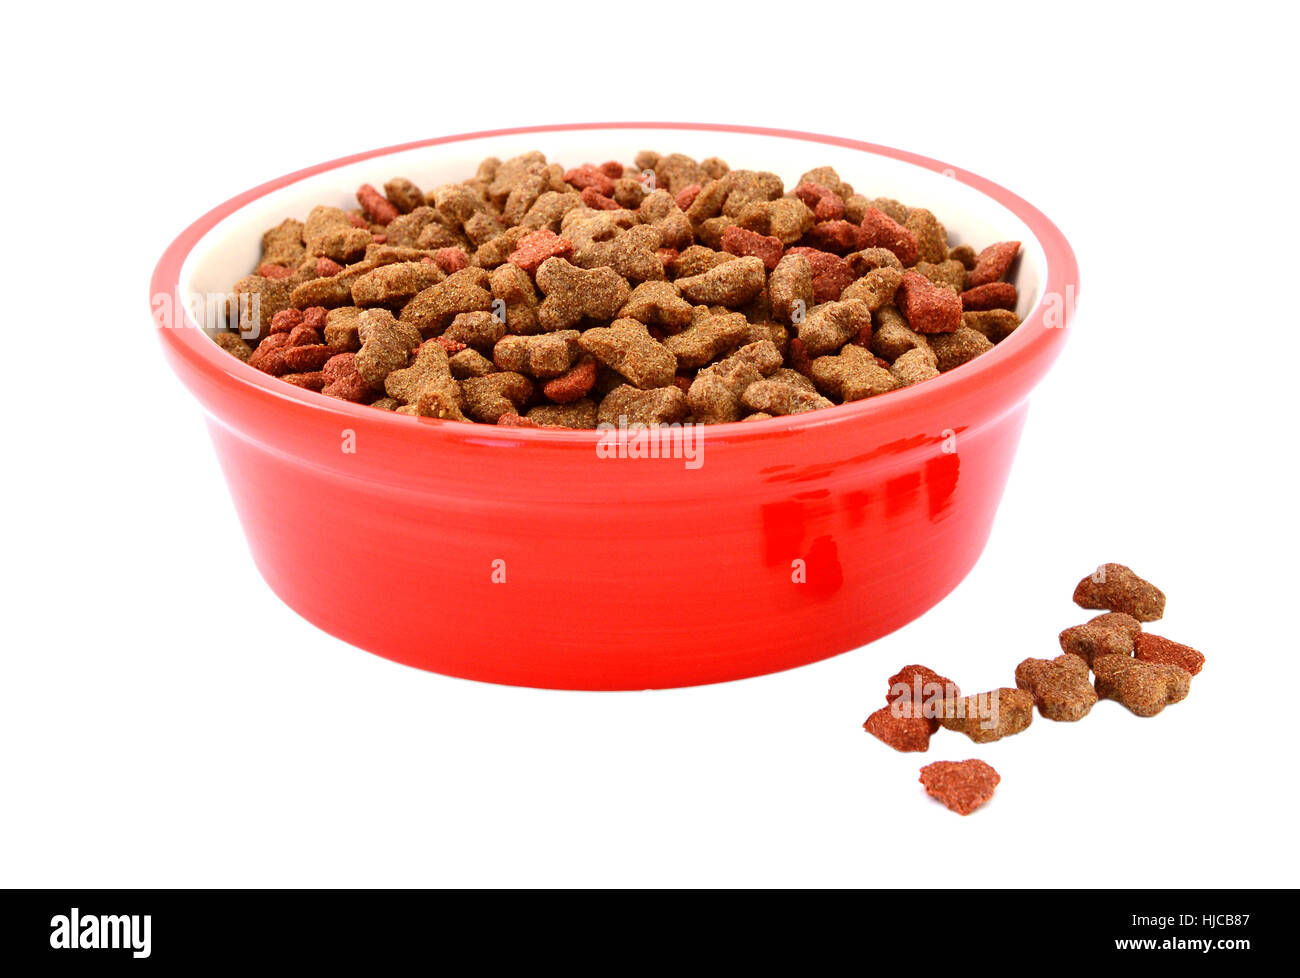 gatos seca en un recipiente de color rojo, algunas galletas derramado junto, aislado en un fondo blanco Fotografía de stock - Alamy